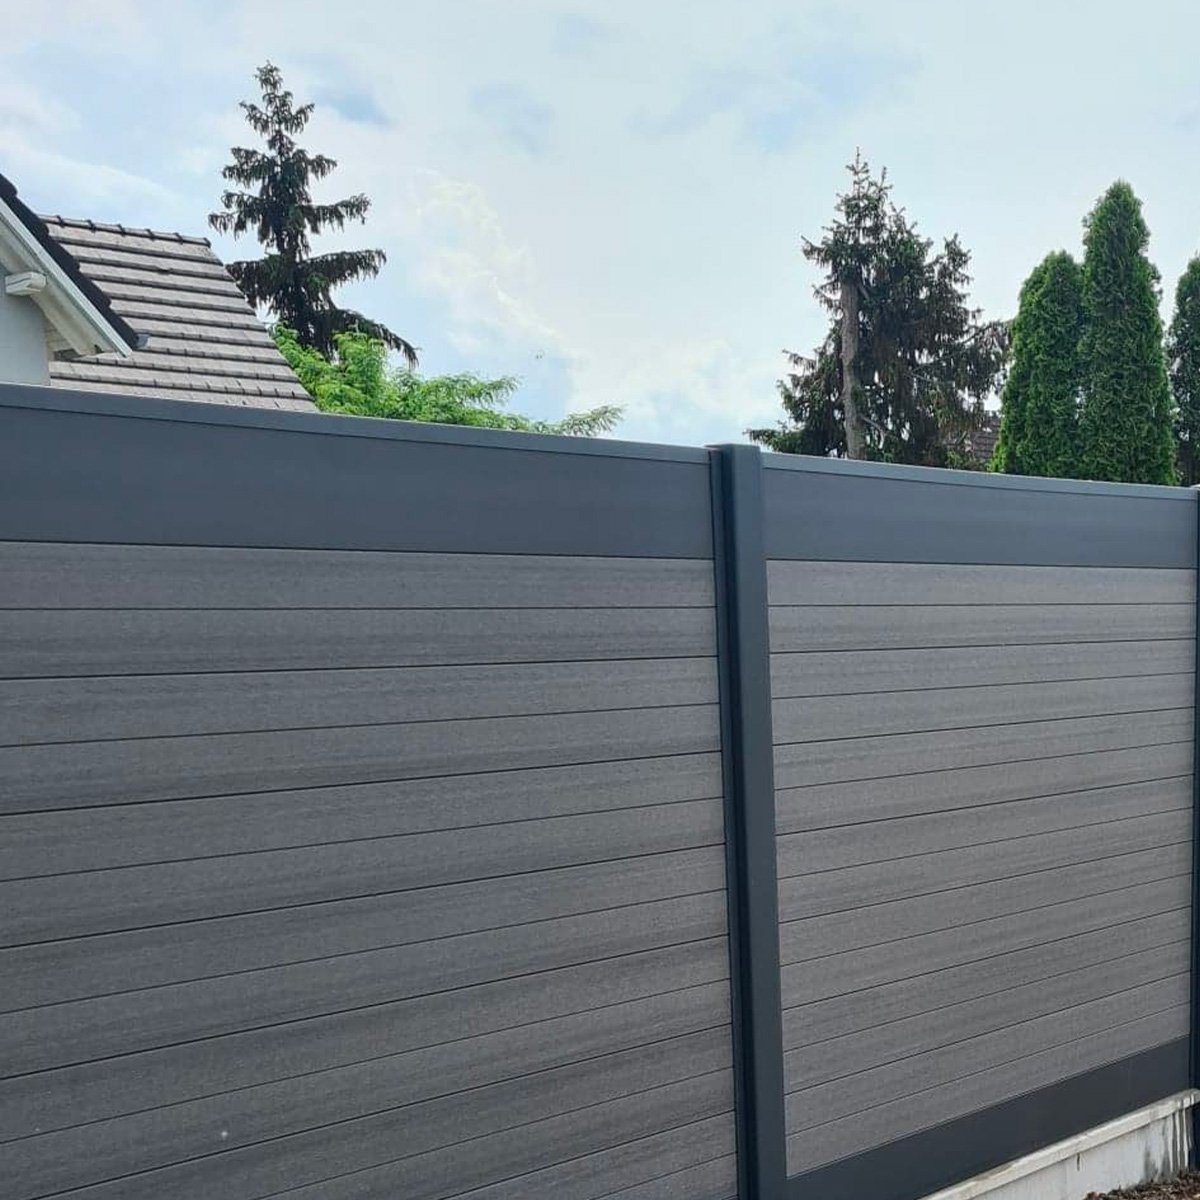 Lame composite ou aluminium : quoi choisir pour ma clôture ?